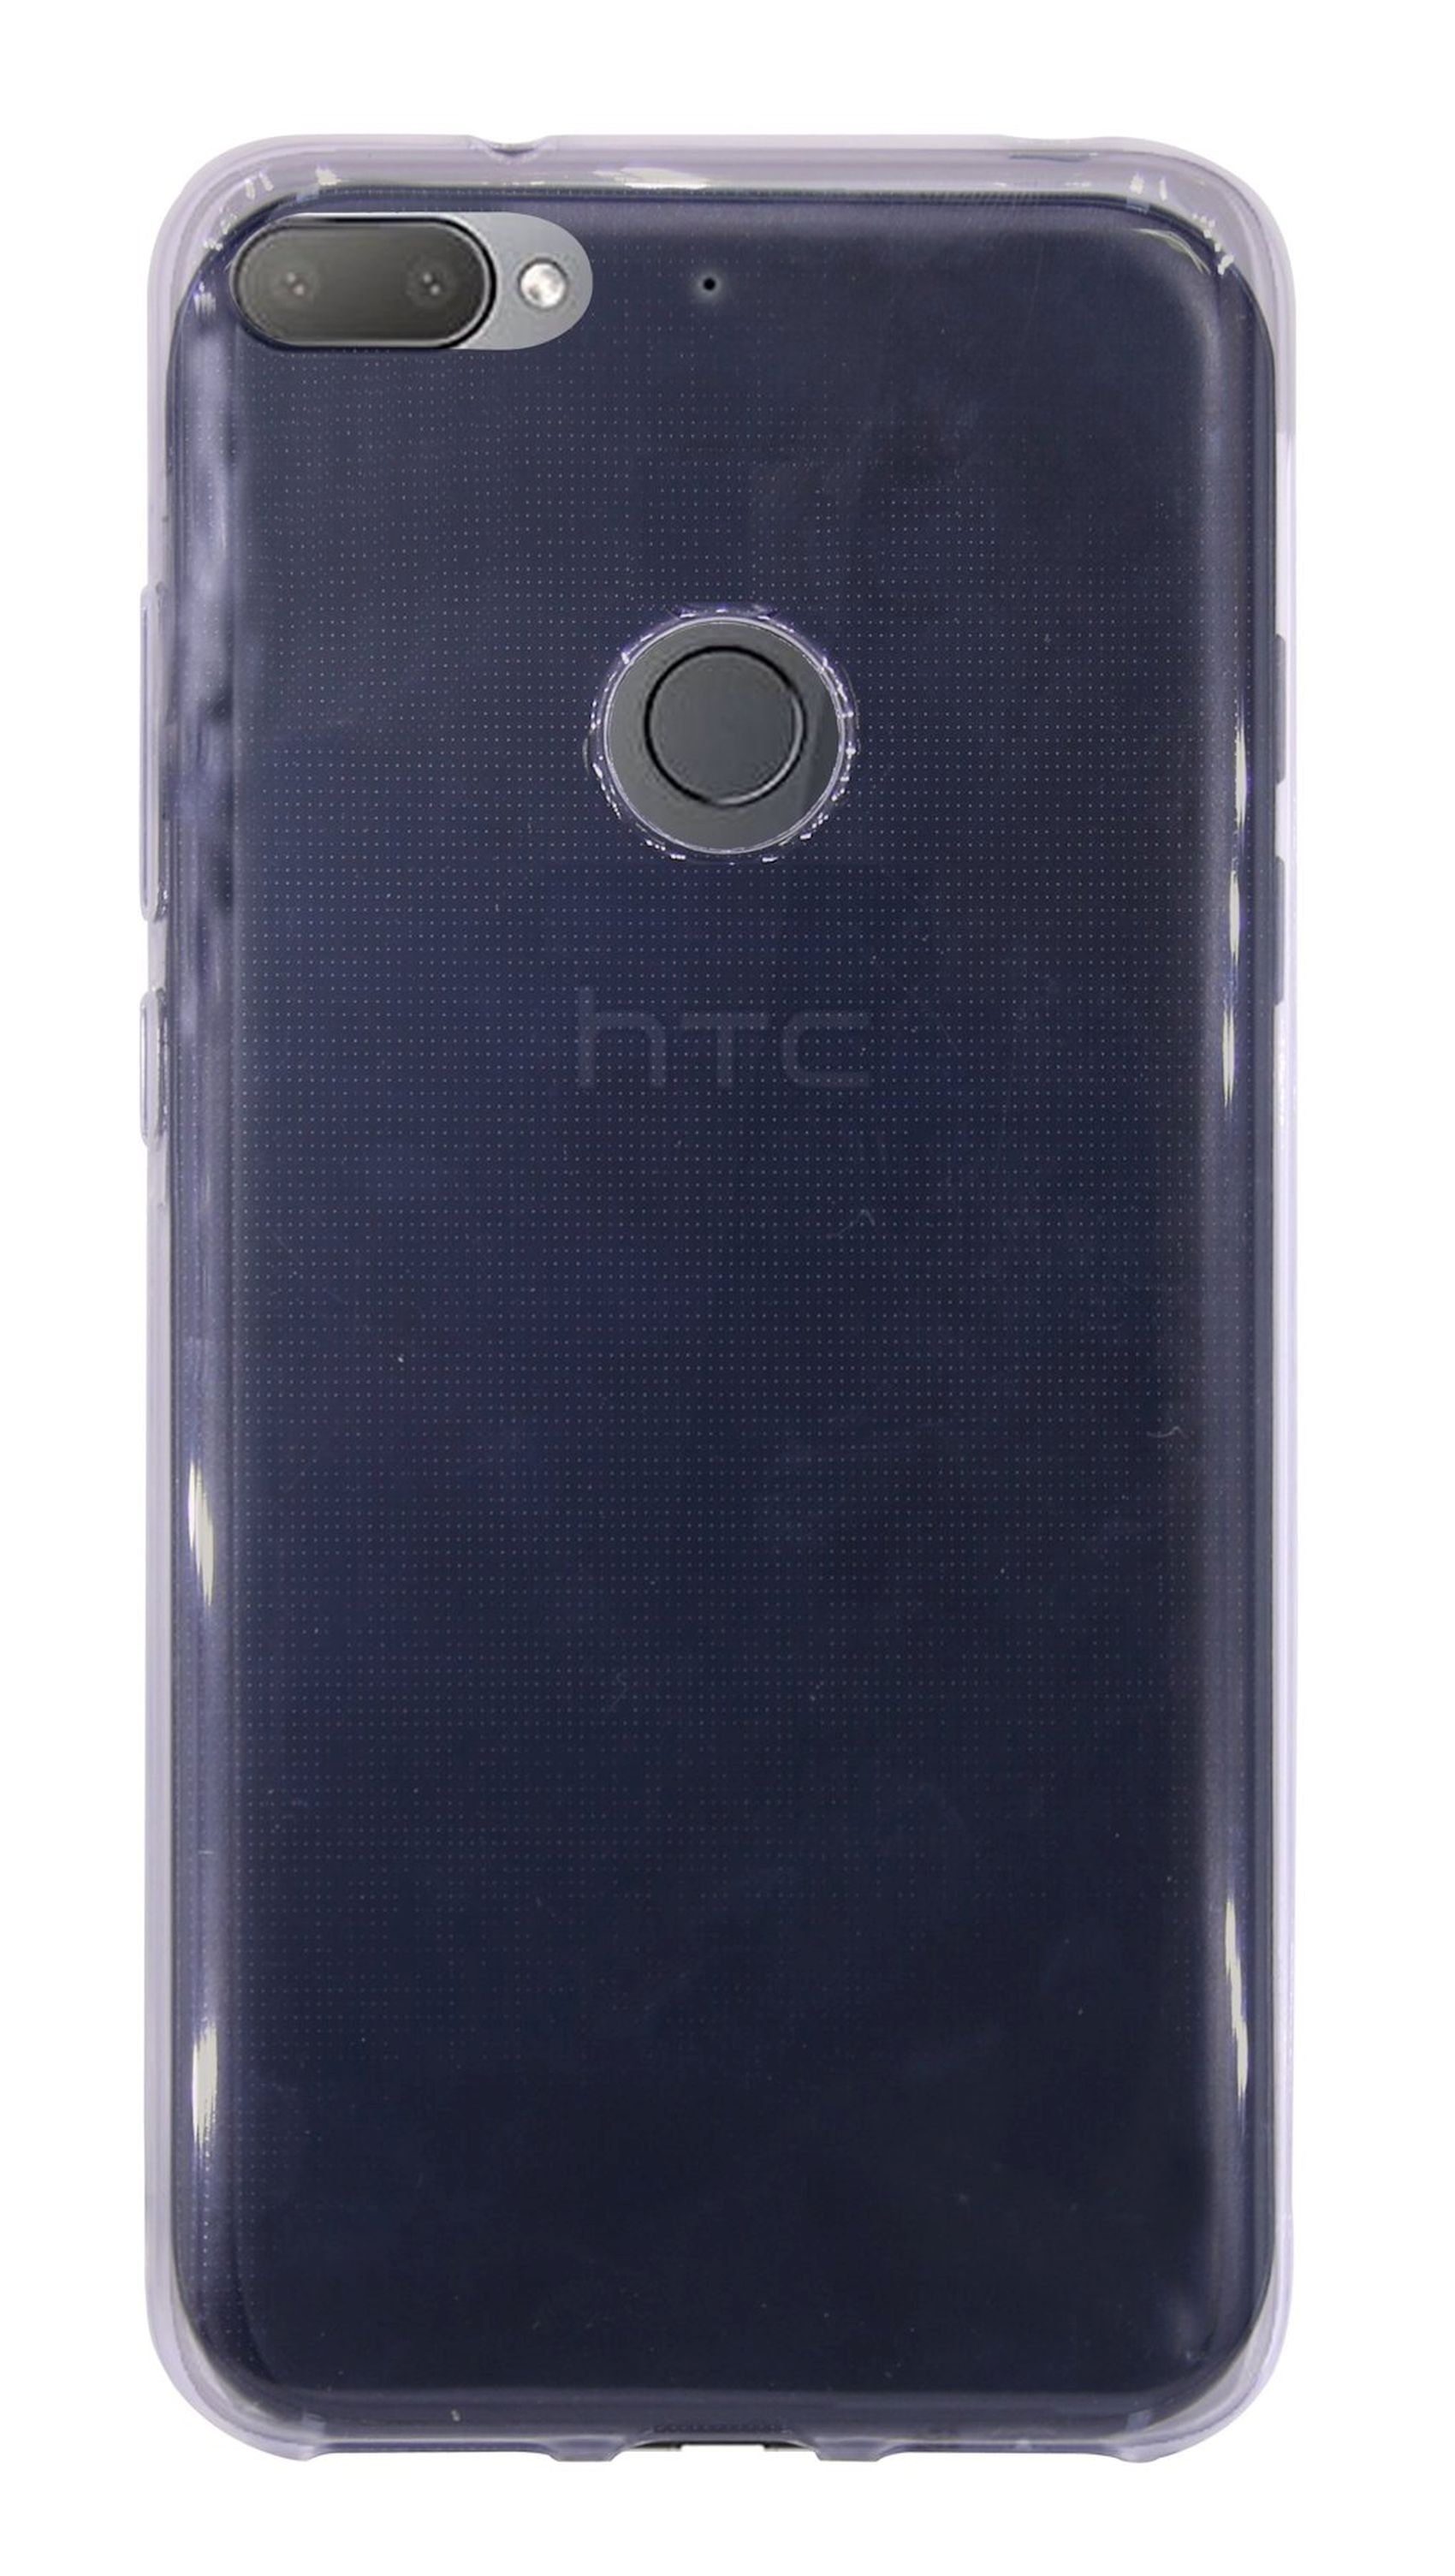 Basic Cover, HTC, Bumper, Grau U12+, COFI